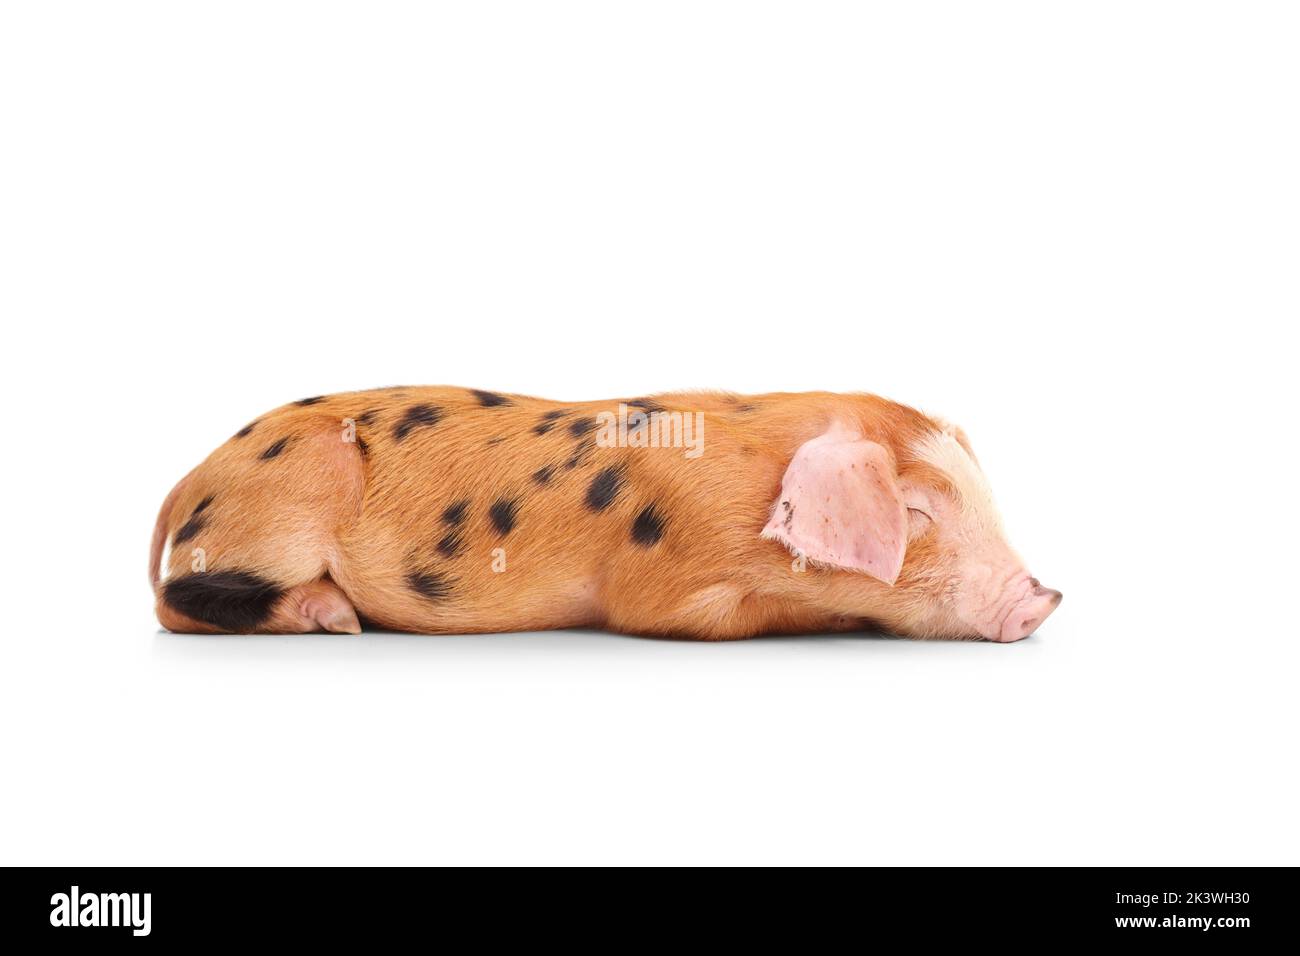 Cerdo pequeño con manchas negras que duermen aisladas sobre fondo blanco Foto de stock